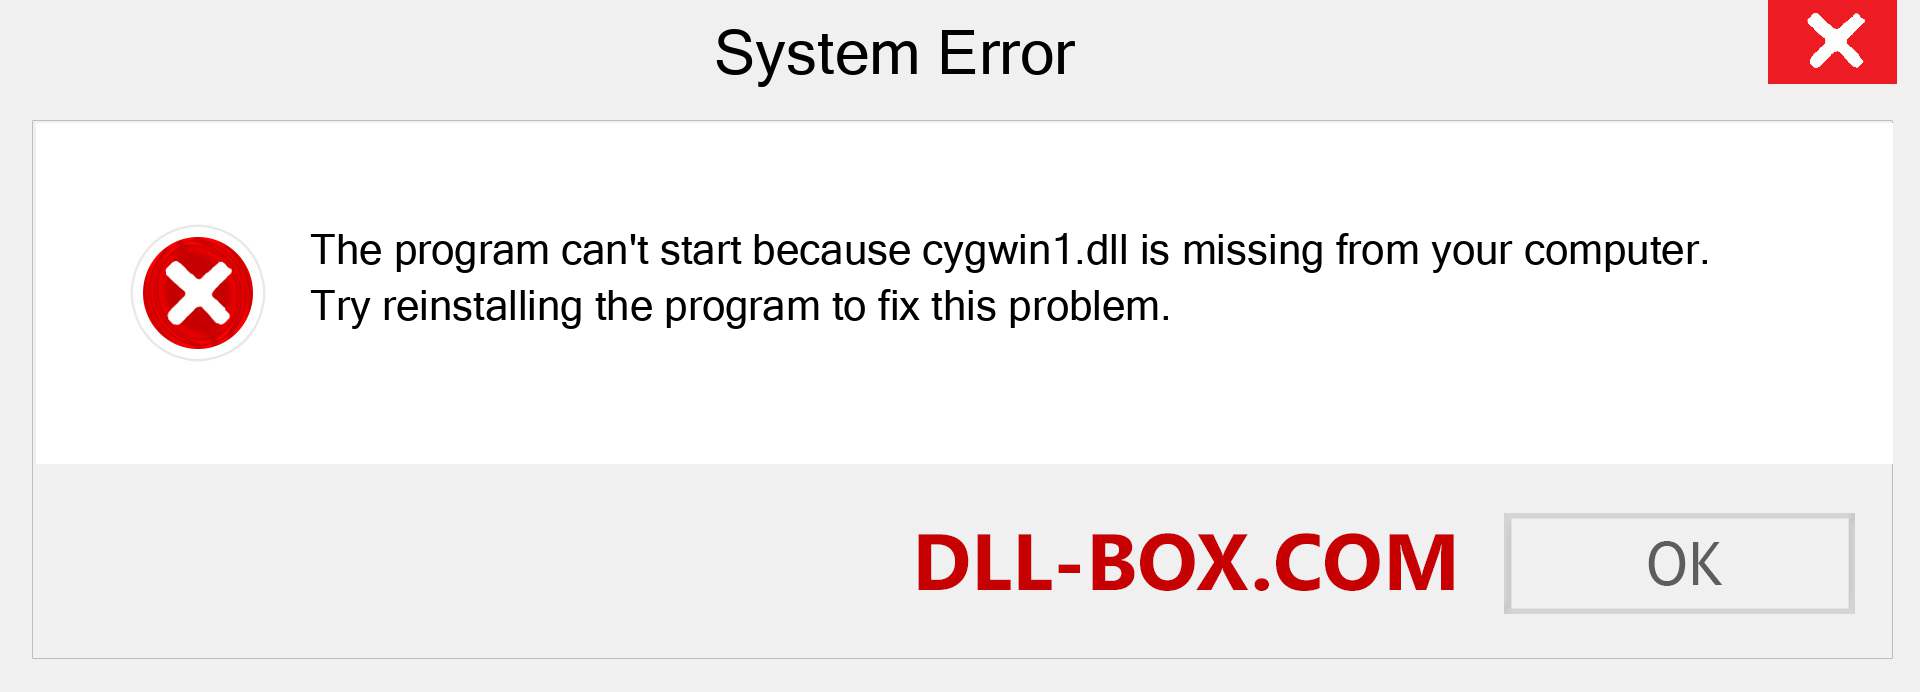 misslyckades mot start eftersom cygwin1.dll inte längre hittades